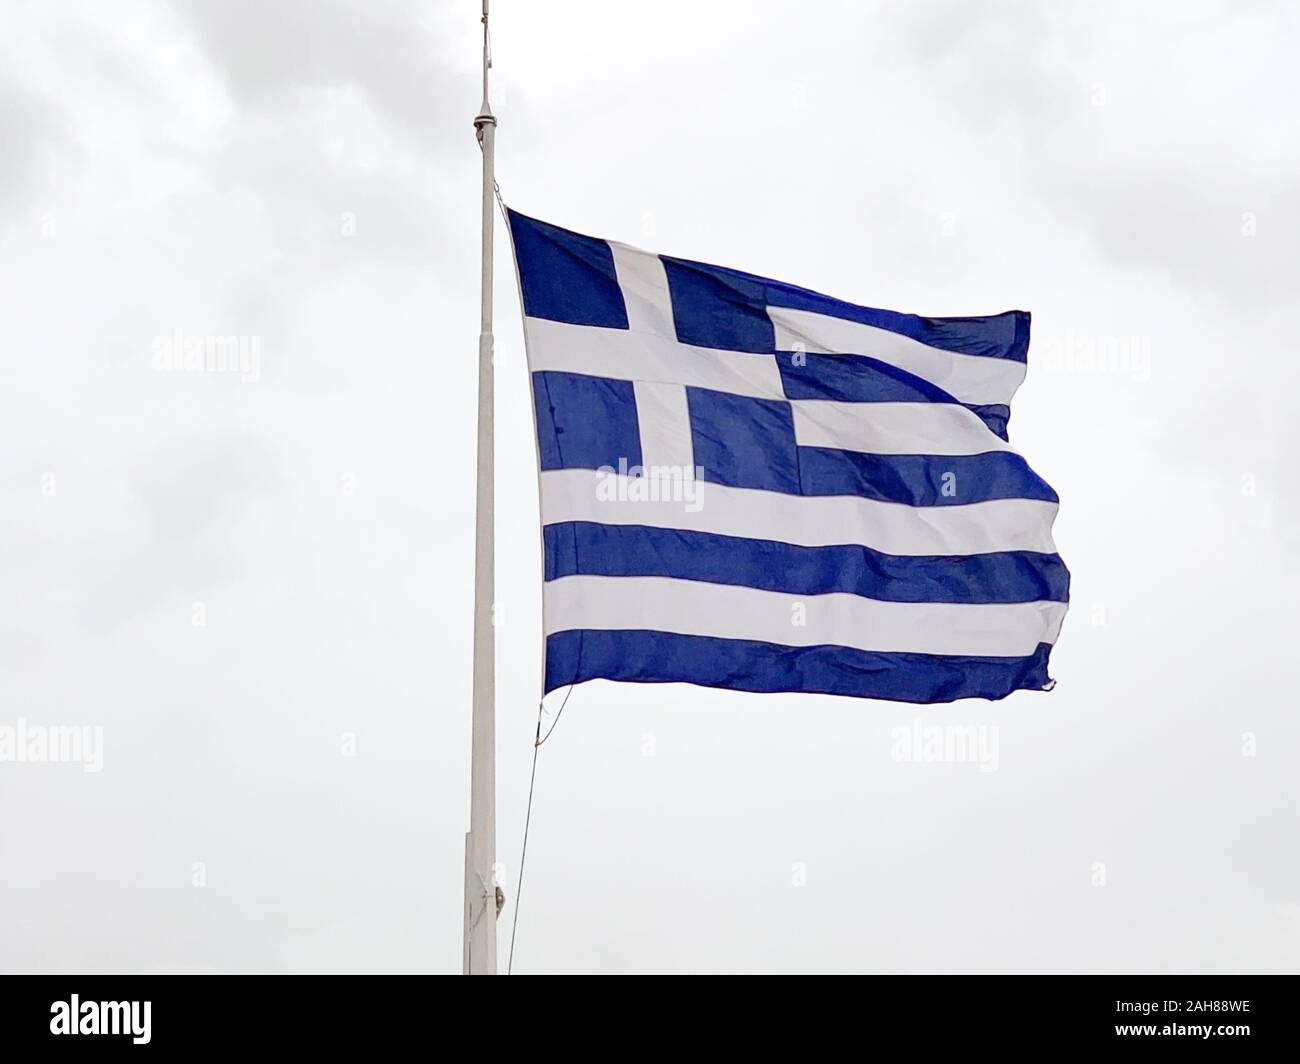 Le drapeau national de la Grèce est en forme sur un mât dans le vent. Appelé aussi le bleu ciel et blanc. Morceau de tissu et une bannière, utilisé comme symbole patriotique. Banque D'Images